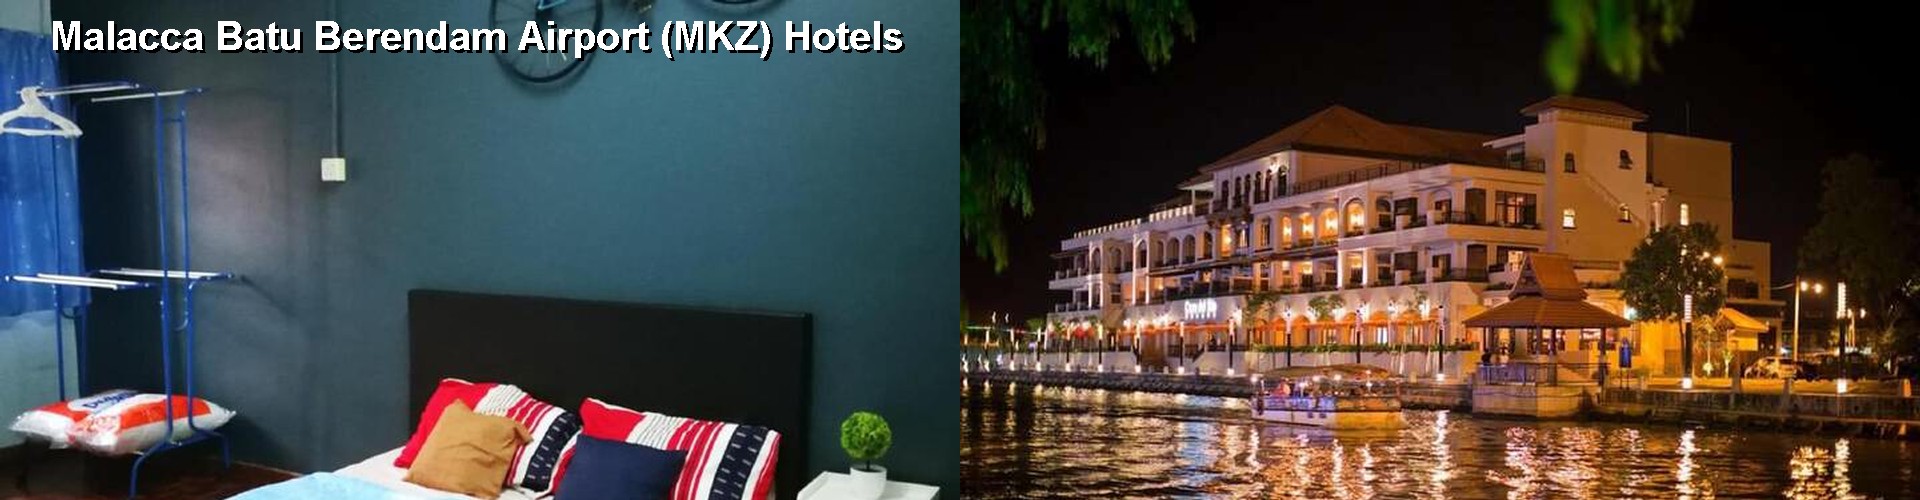 2 Best Hotels near Malacca Batu Berendam Airport (MKZ)